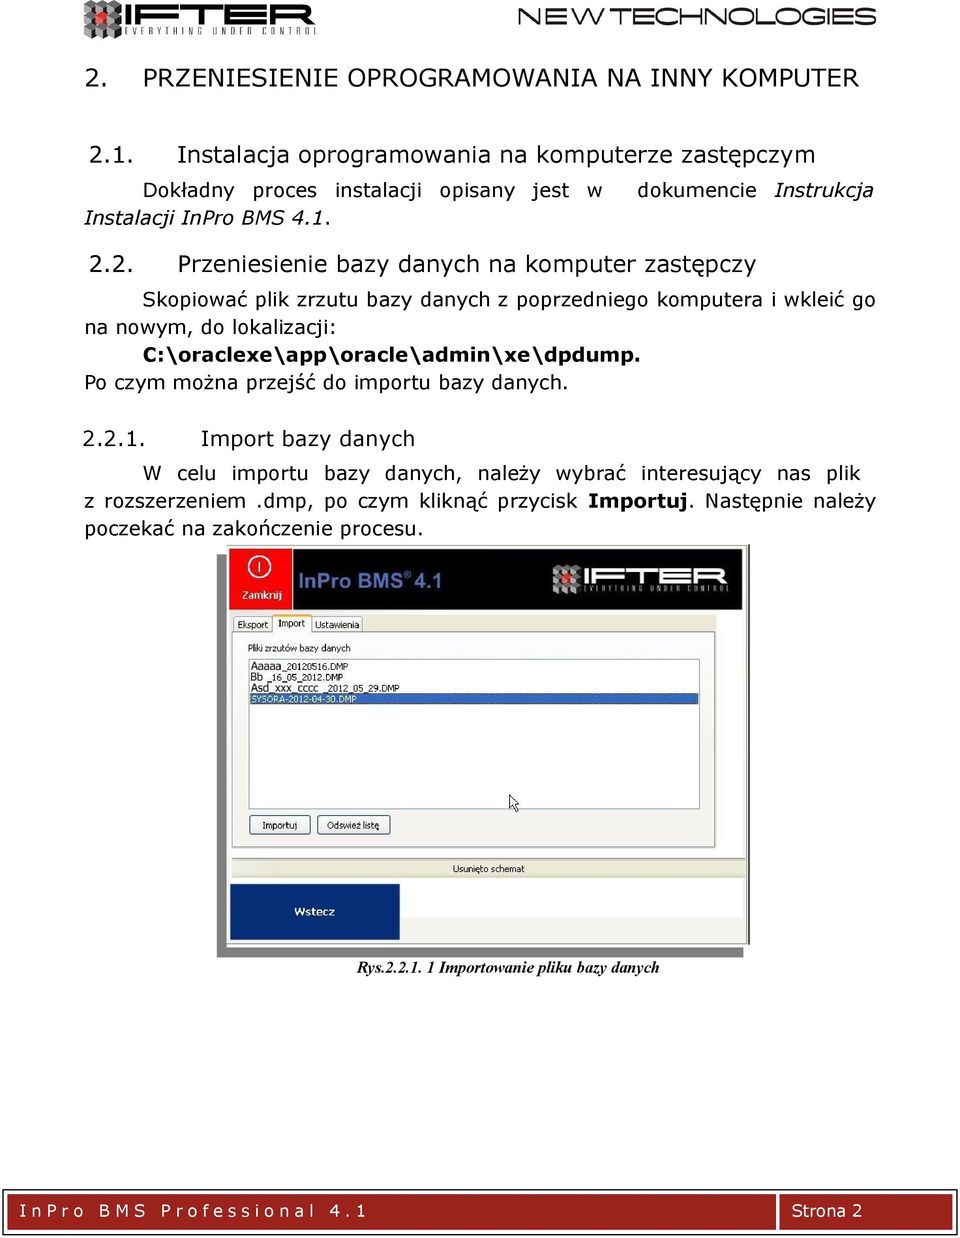 2. dokumencie Instrukcja Przeniesienie bazy danych na komputer zastępczy Skopiować plik zrzutu bazy danych z poprzedniego komputera i wkleić go na nowym, do